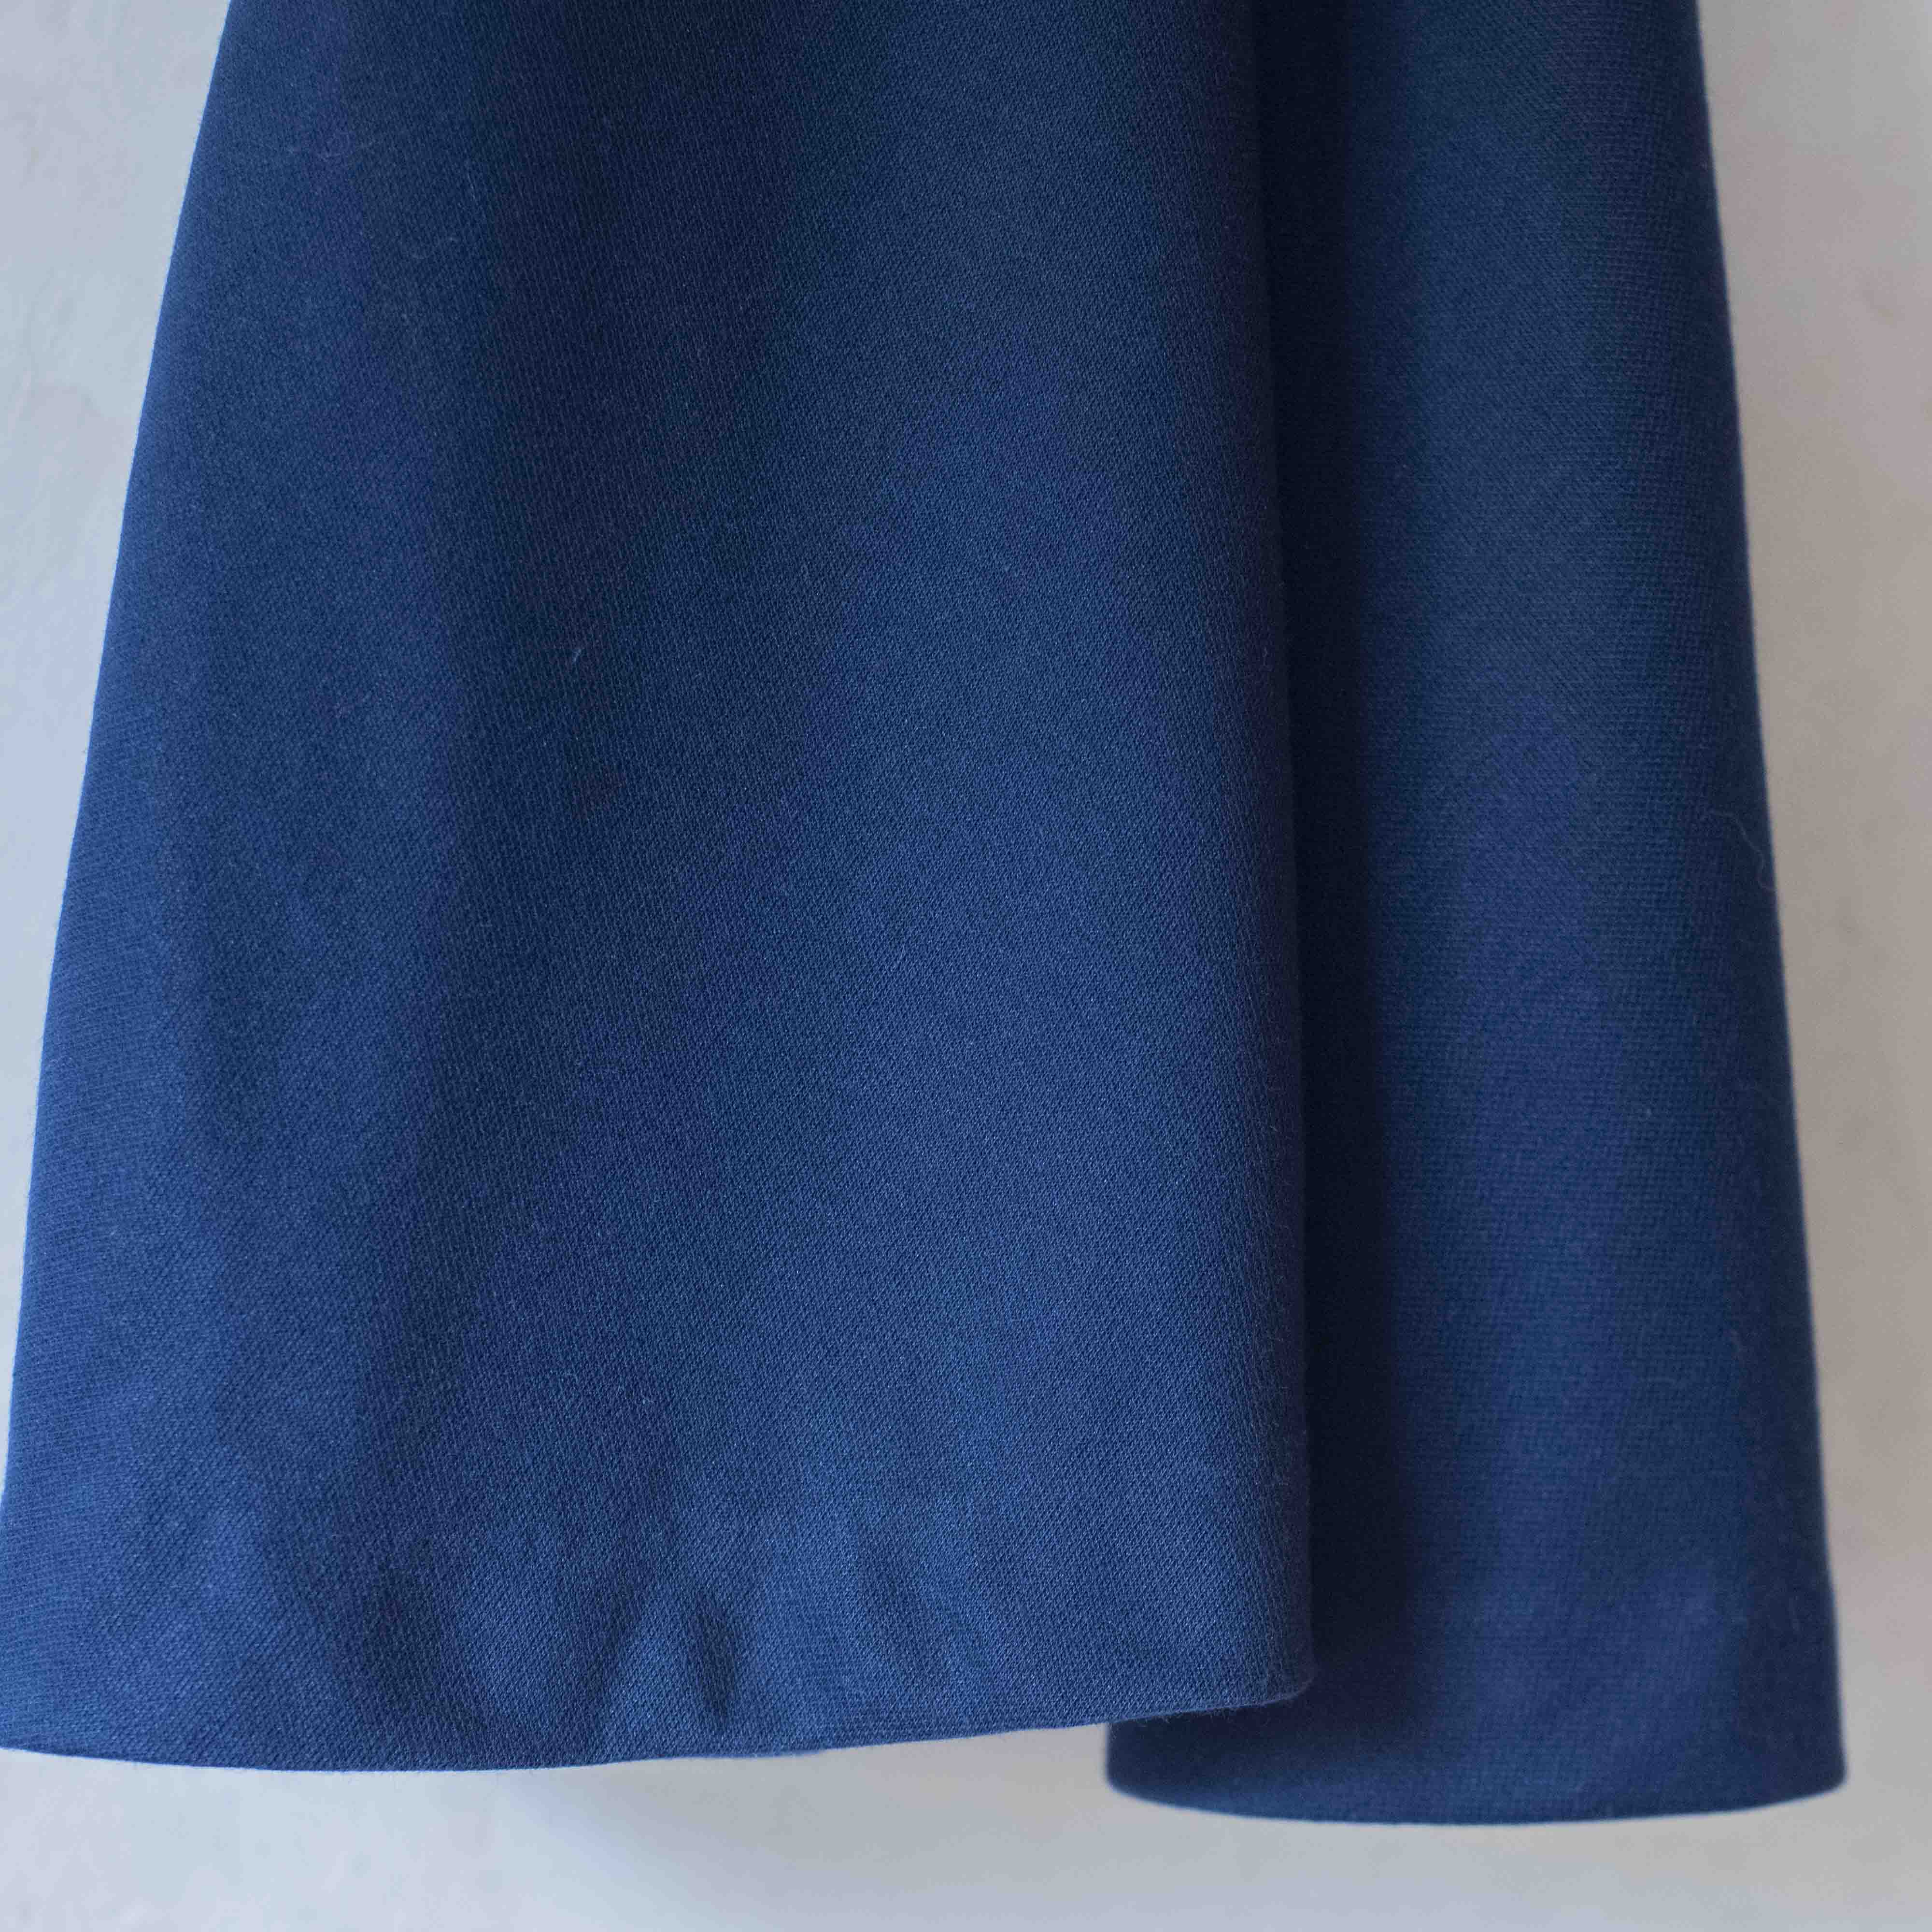 שמלת מעטפת כחולה עם משבצות צבעוניות | 3-4 שנים